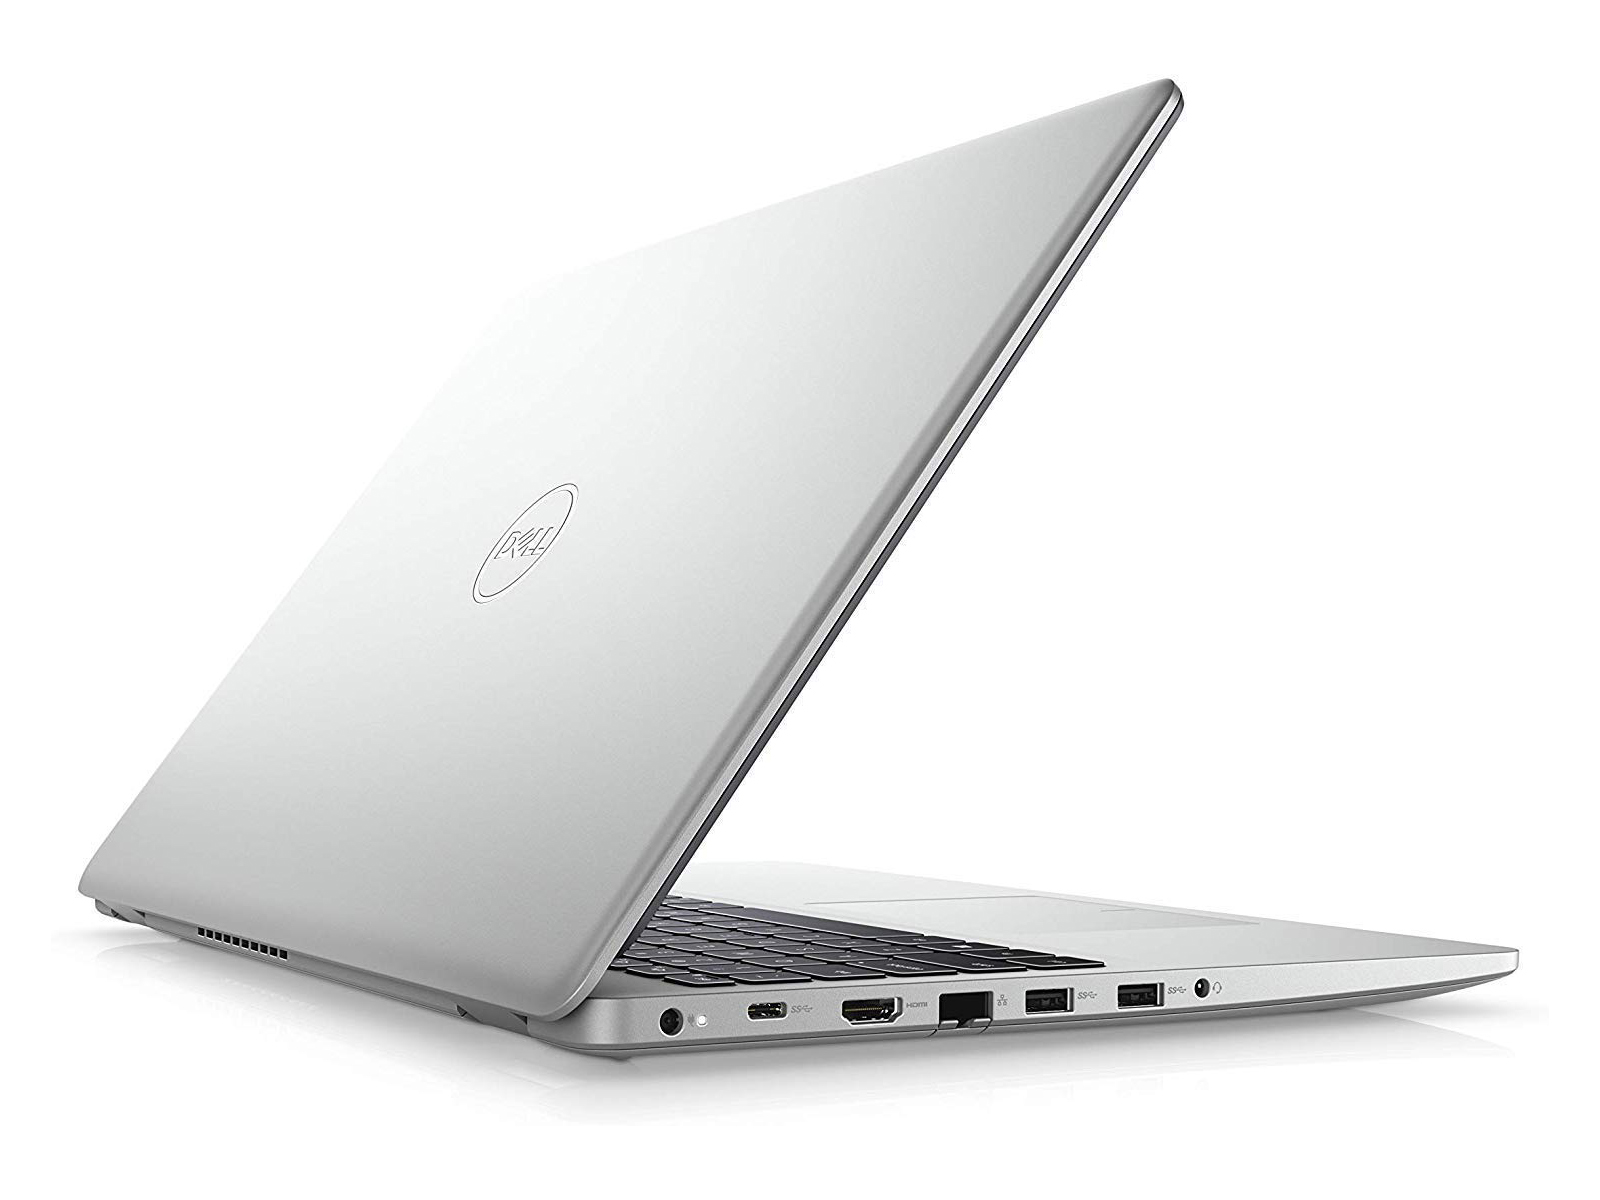 Dell Inspiron 15 5593 I5 1035g1 Notebookcheck Net External Reviews